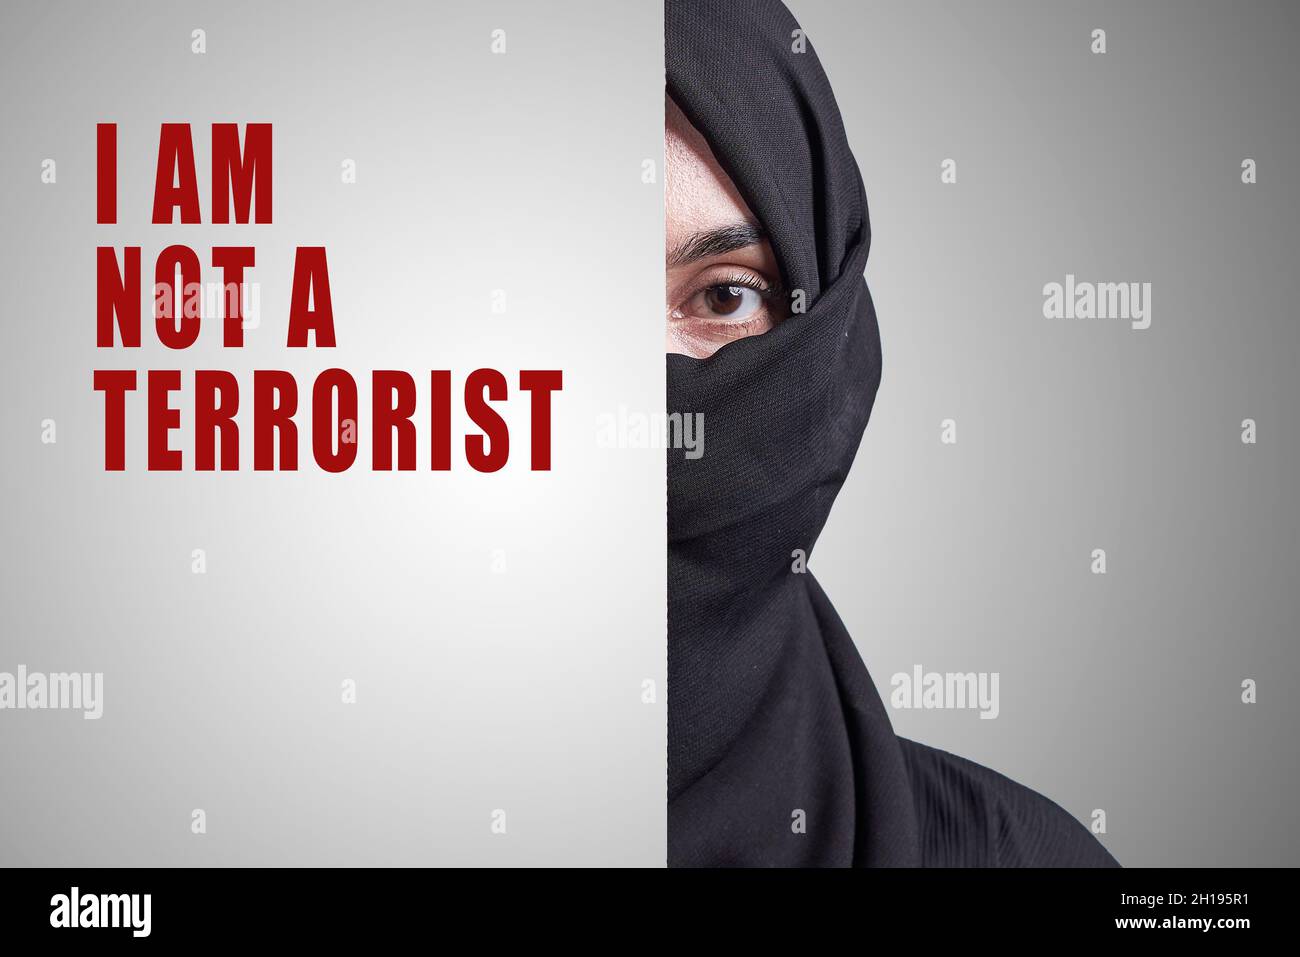 Junge muslimische Frauen, die einen Teil des Gesichts bedecken und sagen: Ich bin kein Terrorist. Muslimische Mädchen in traditioneller Nikab-Kleidung. Symbol der Diskriminierung Stockfoto